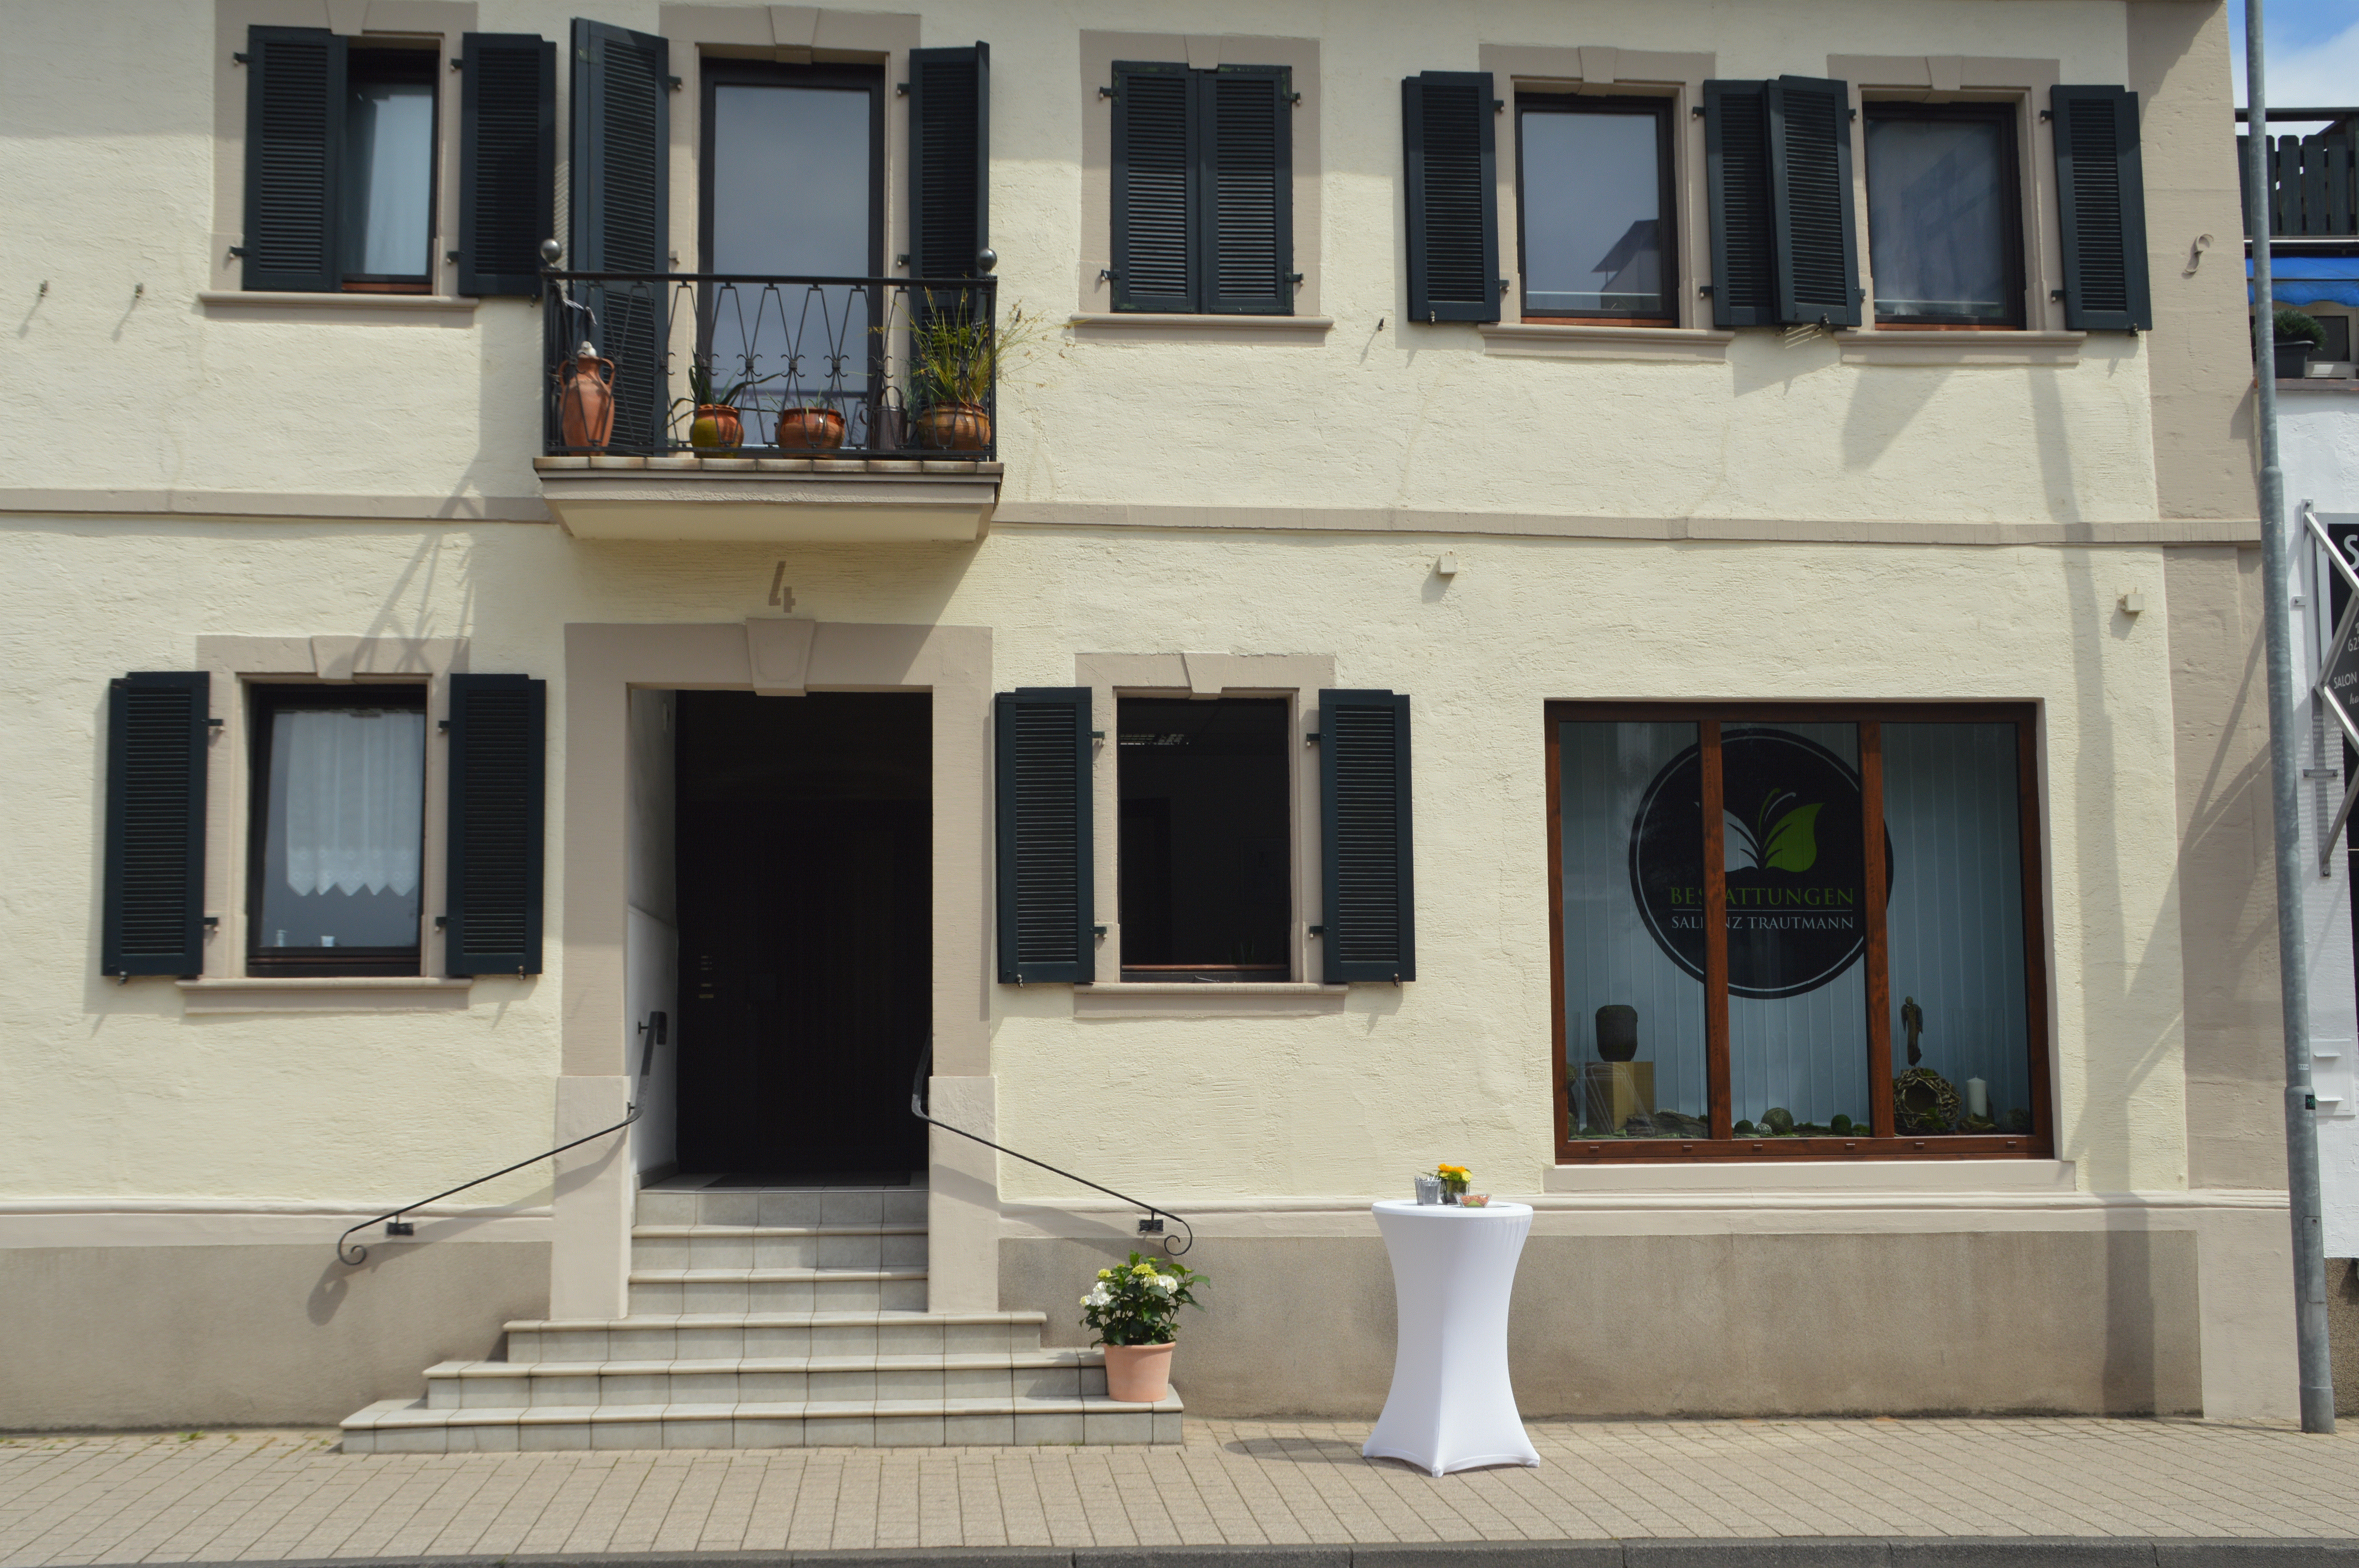 Hier befinden sich unsere Geschäftsräume in der Wilhelmstraße 4 in Sinsheim, direkt neben dem Rathaus